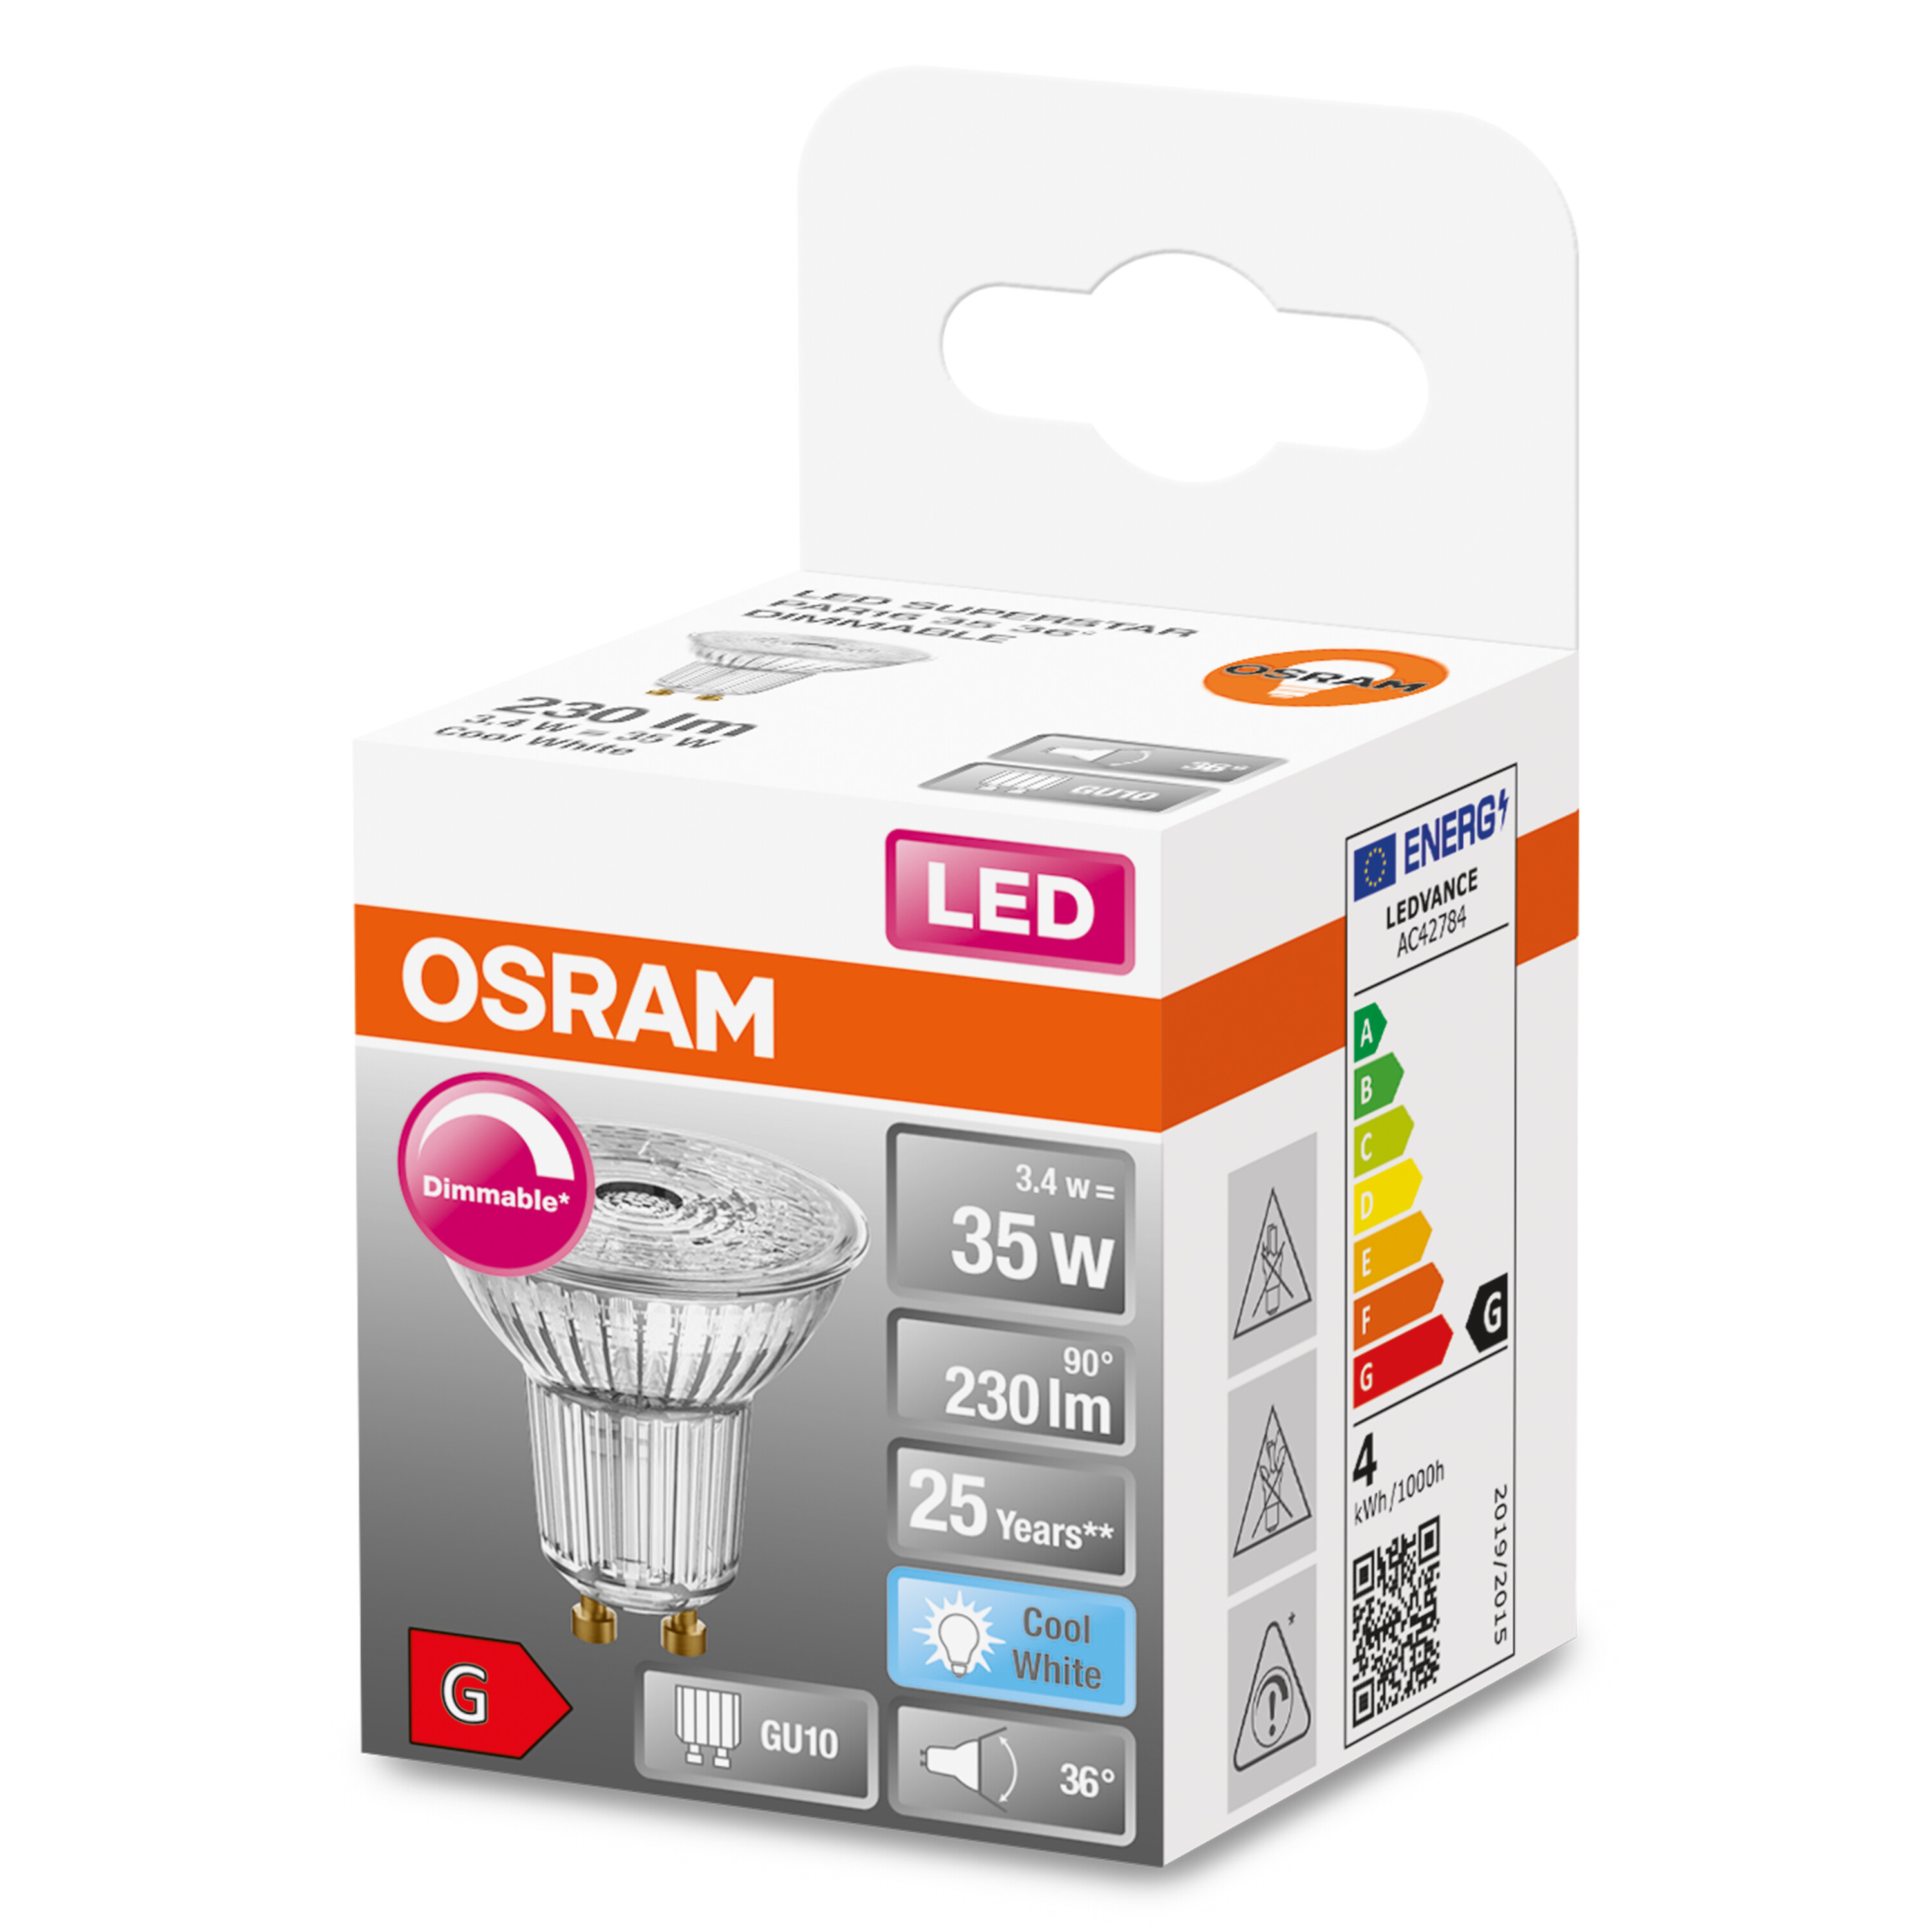 OSRAM  LED SUPERSTAR PAR16 LED Lumen 230 Kaltweiß Lampe